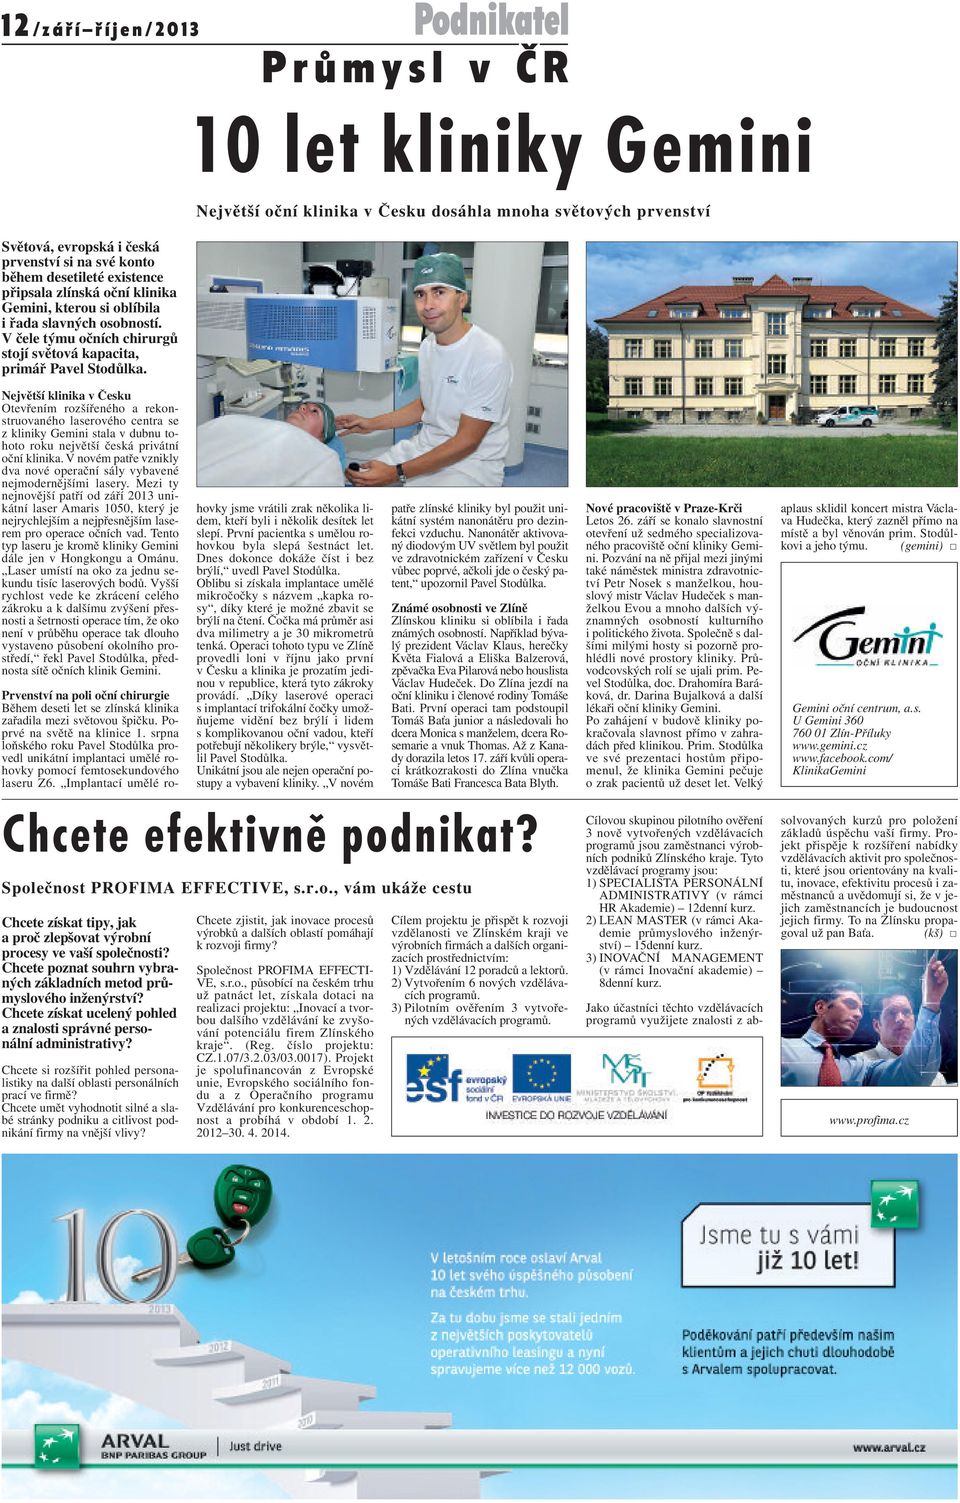 Největší klinika v Česku Otevřením rozšířeného a rekonstruovaného laserového centra se z kliniky Gemini stala v dubnu tohoto roku největší česká privátní oční klinika.